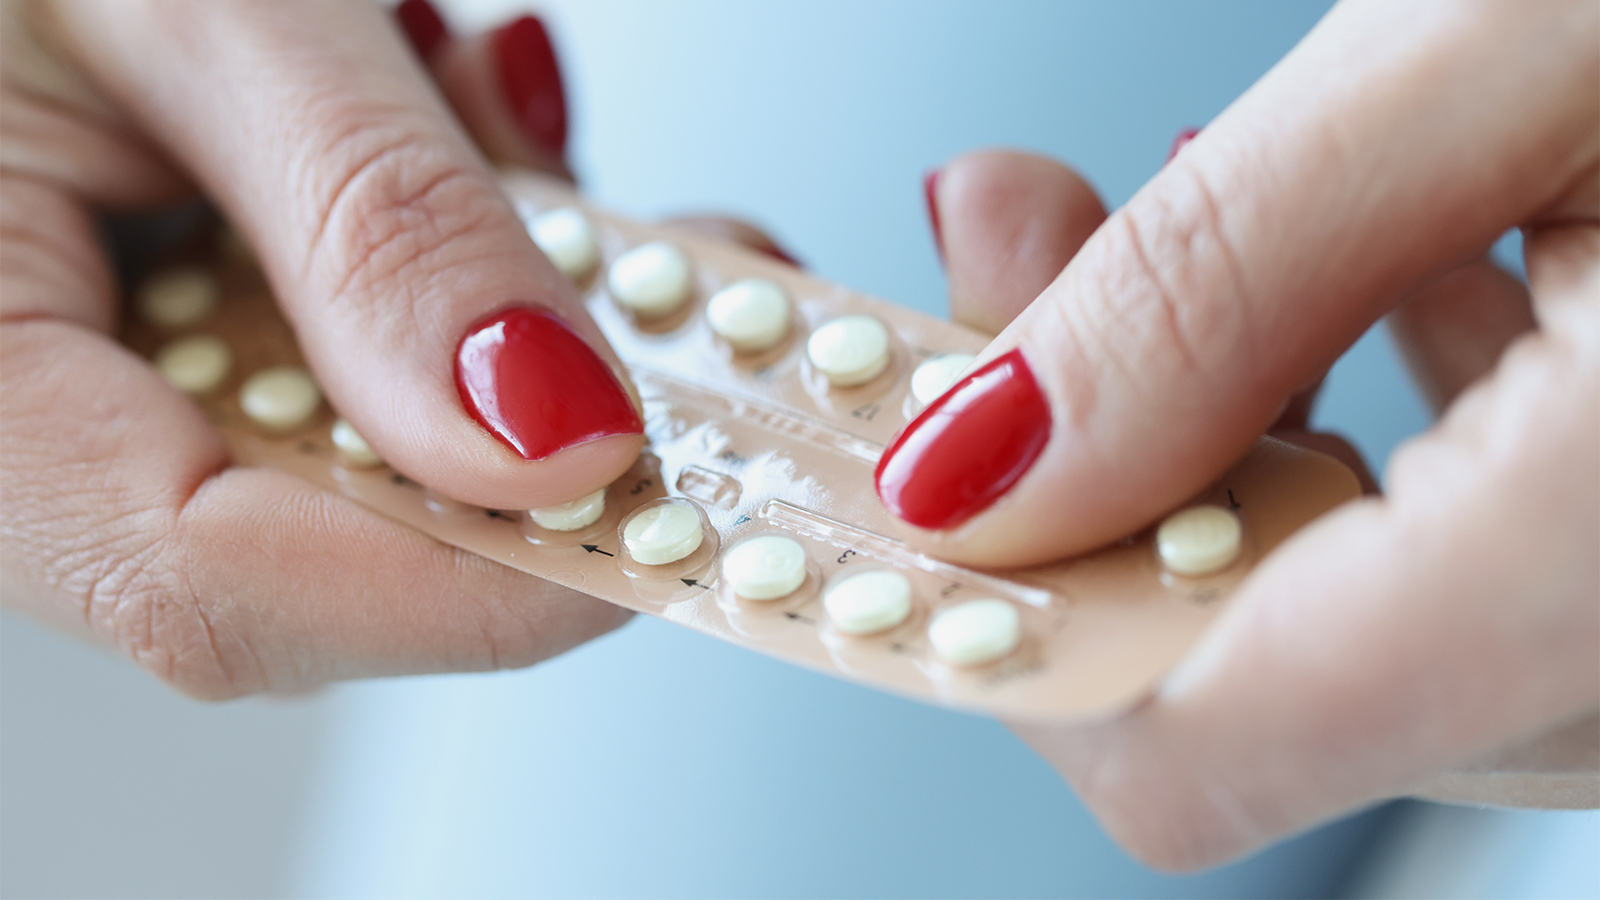 Как я покупаю противозачаточные таблетки в США через интернет